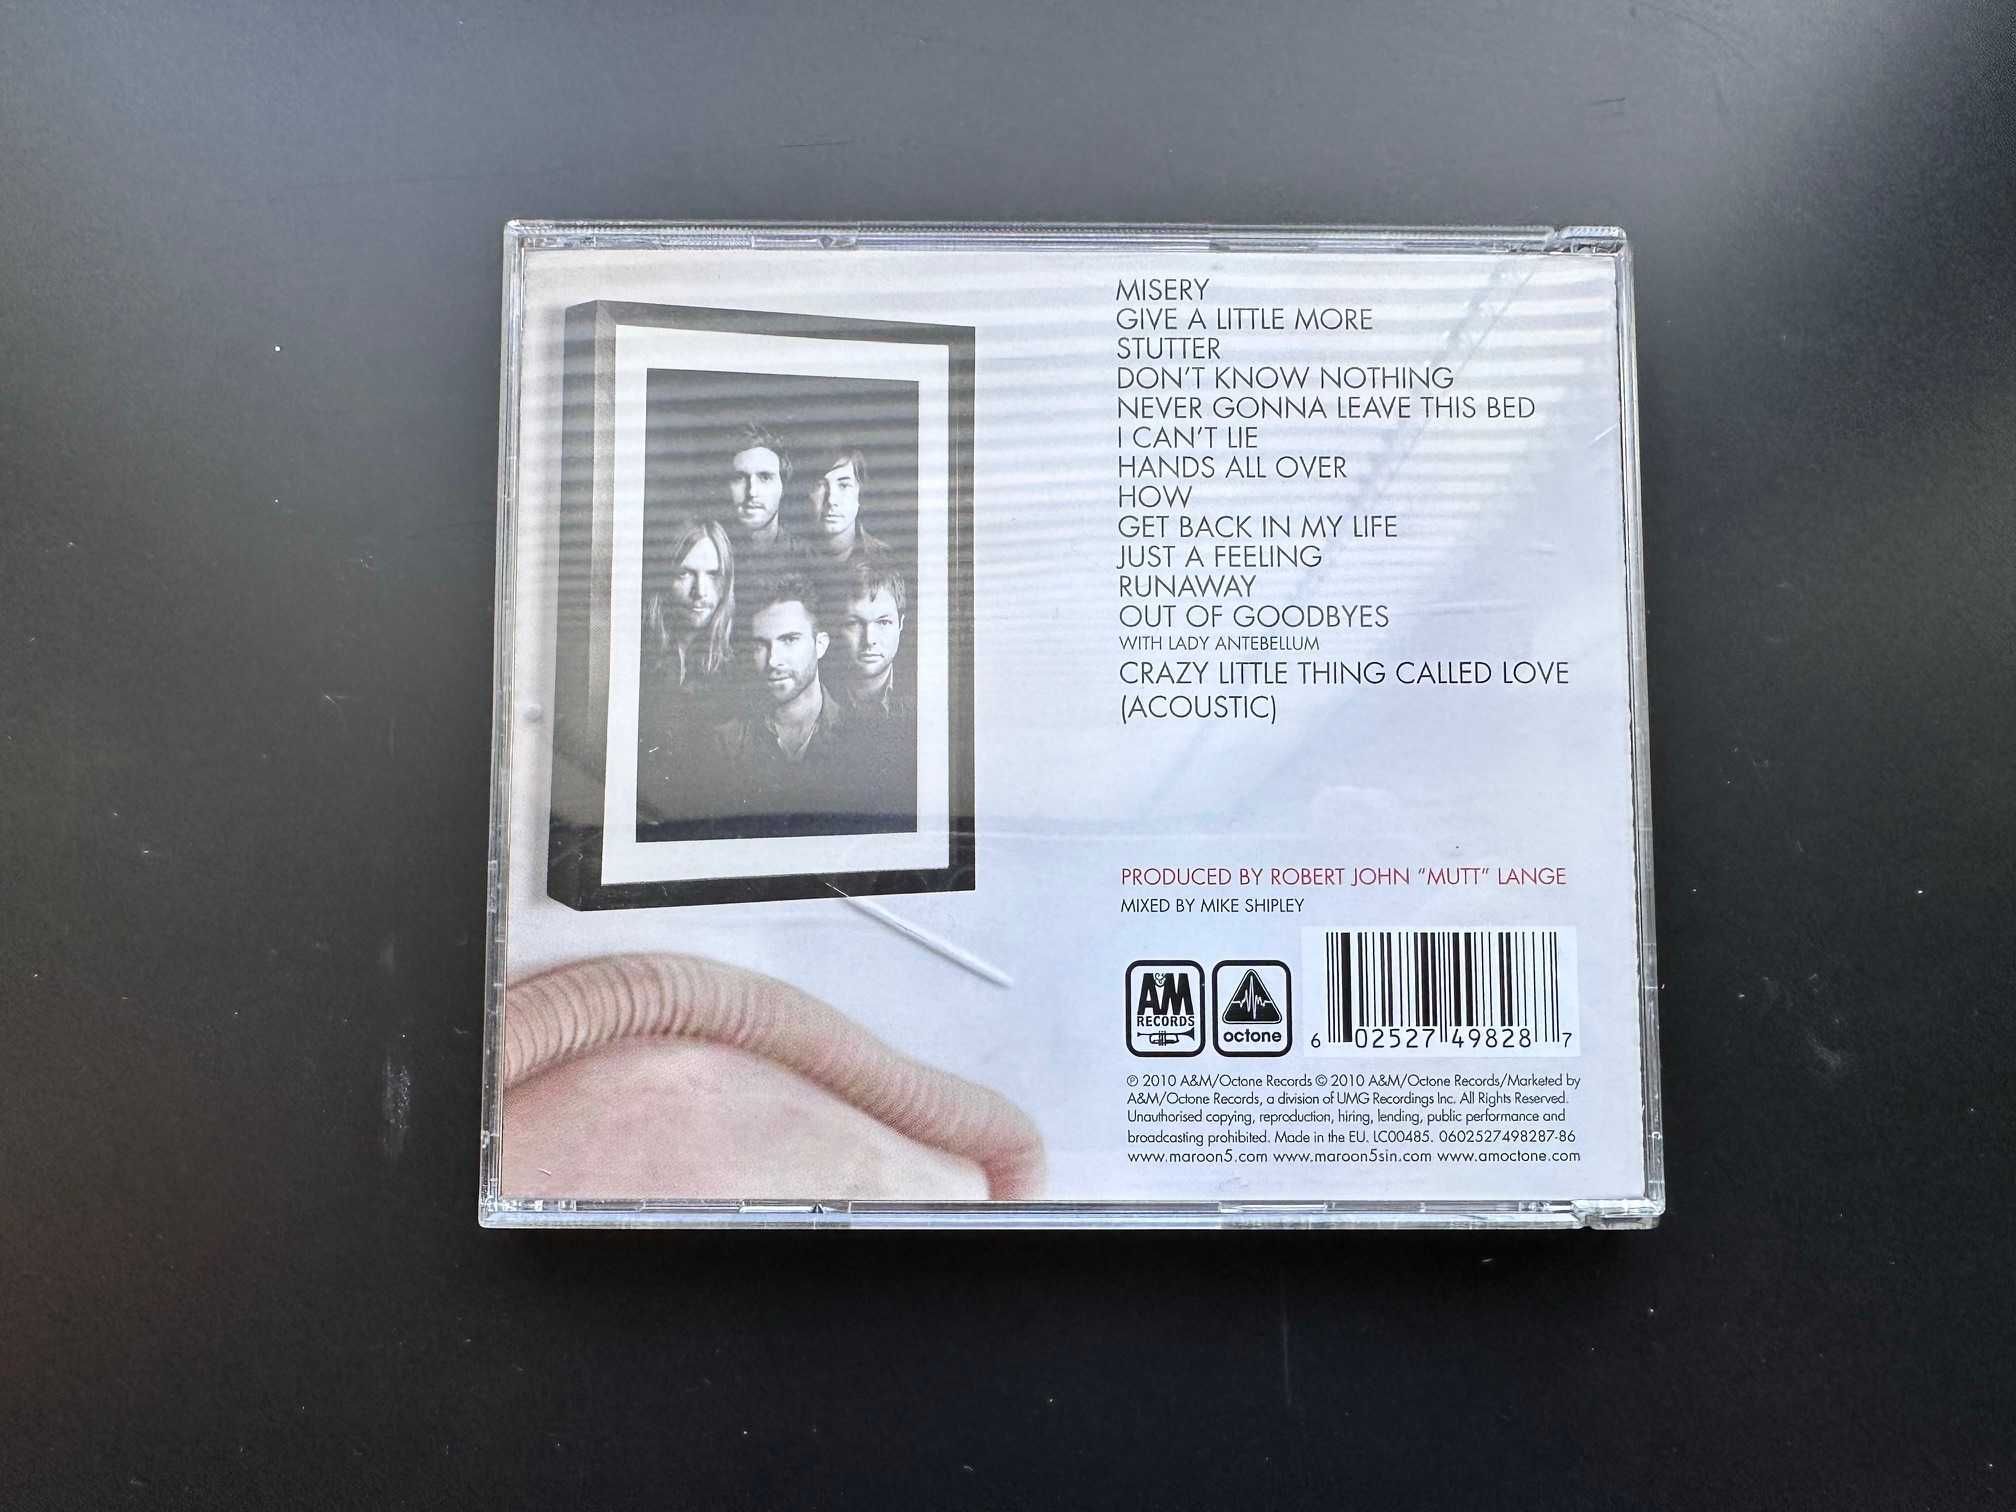 Oryginalna płyta CD z muzyką: Maroon 5, Hands All Over